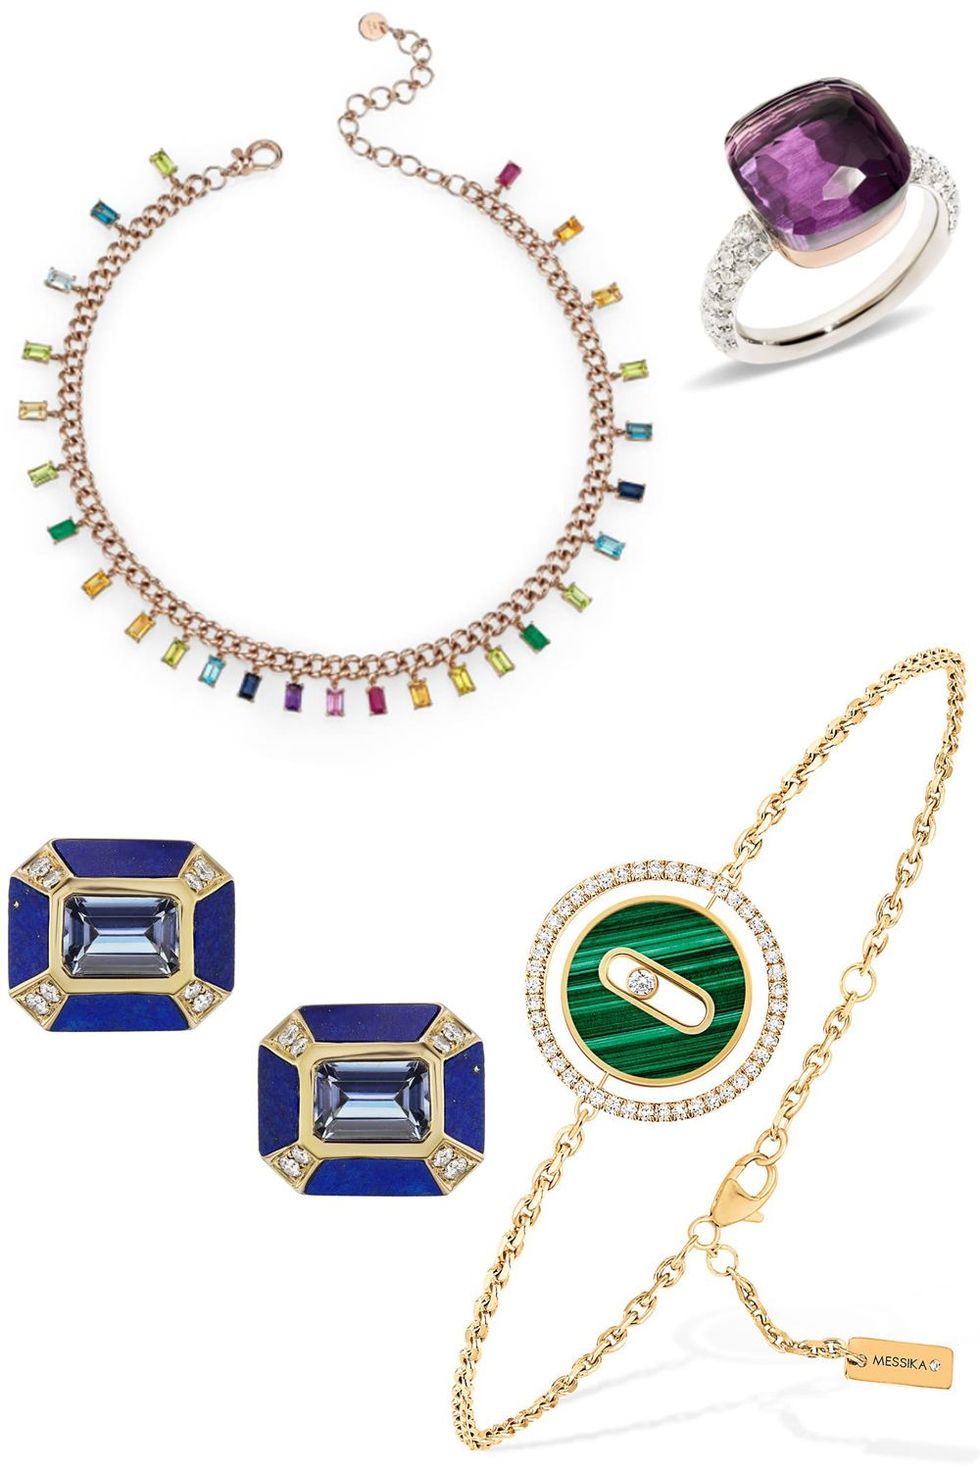 gemstone jewelry trend